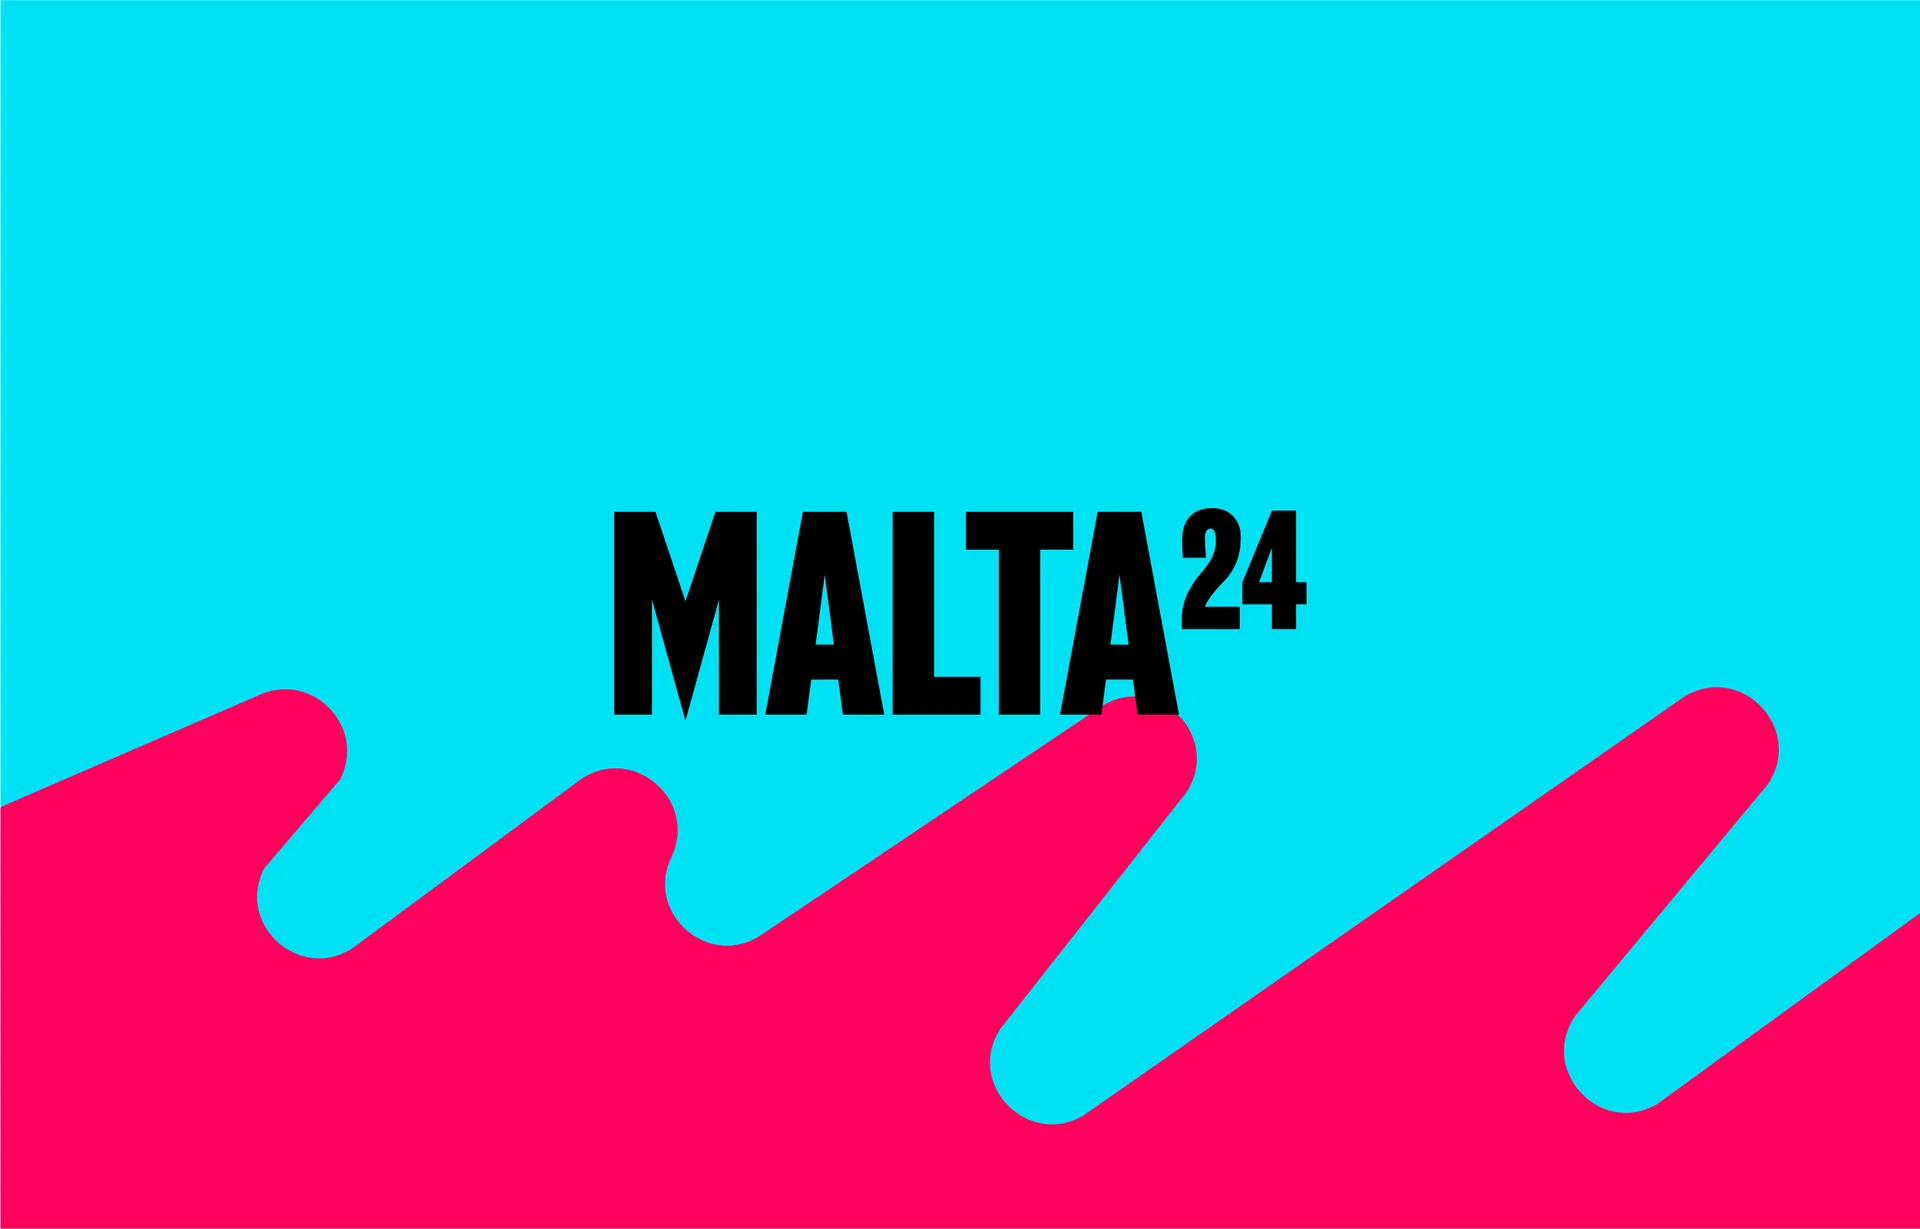 Czarny napis "Malta 24" na niebieskim tle. Na dole grafiki czerwona fala.